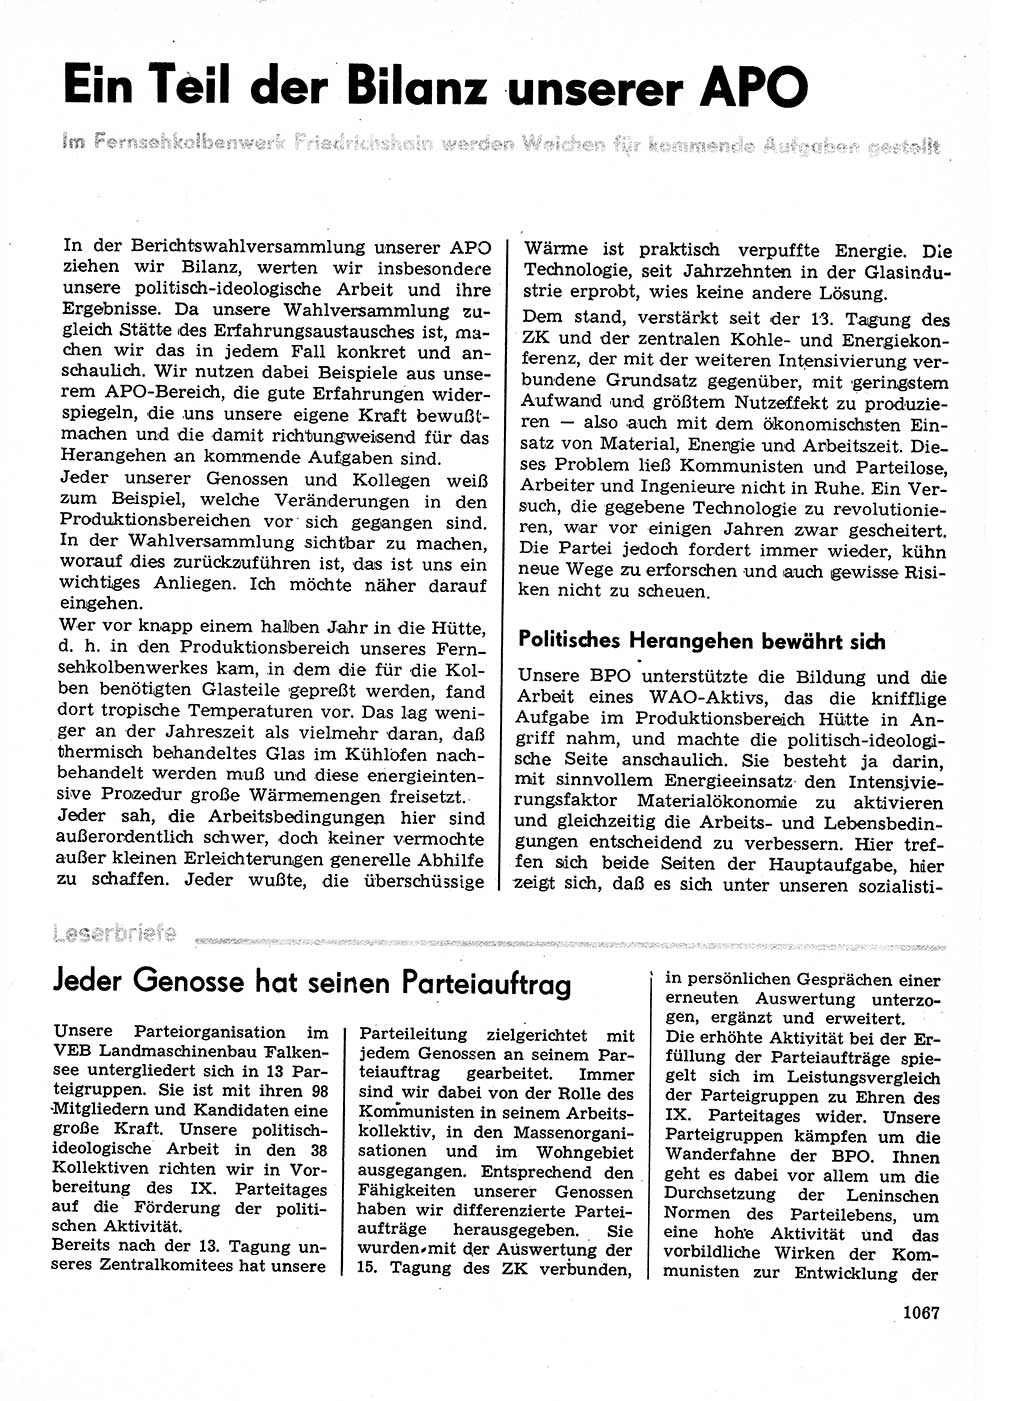 Neuer Weg (NW), Organ des Zentralkomitees (ZK) der SED (Sozialistische Einheitspartei Deutschlands) für Fragen des Parteilebens, 30. Jahrgang [Deutsche Demokratische Republik (DDR)] 1975, Seite 1067 (NW ZK SED DDR 1975, S. 1067)